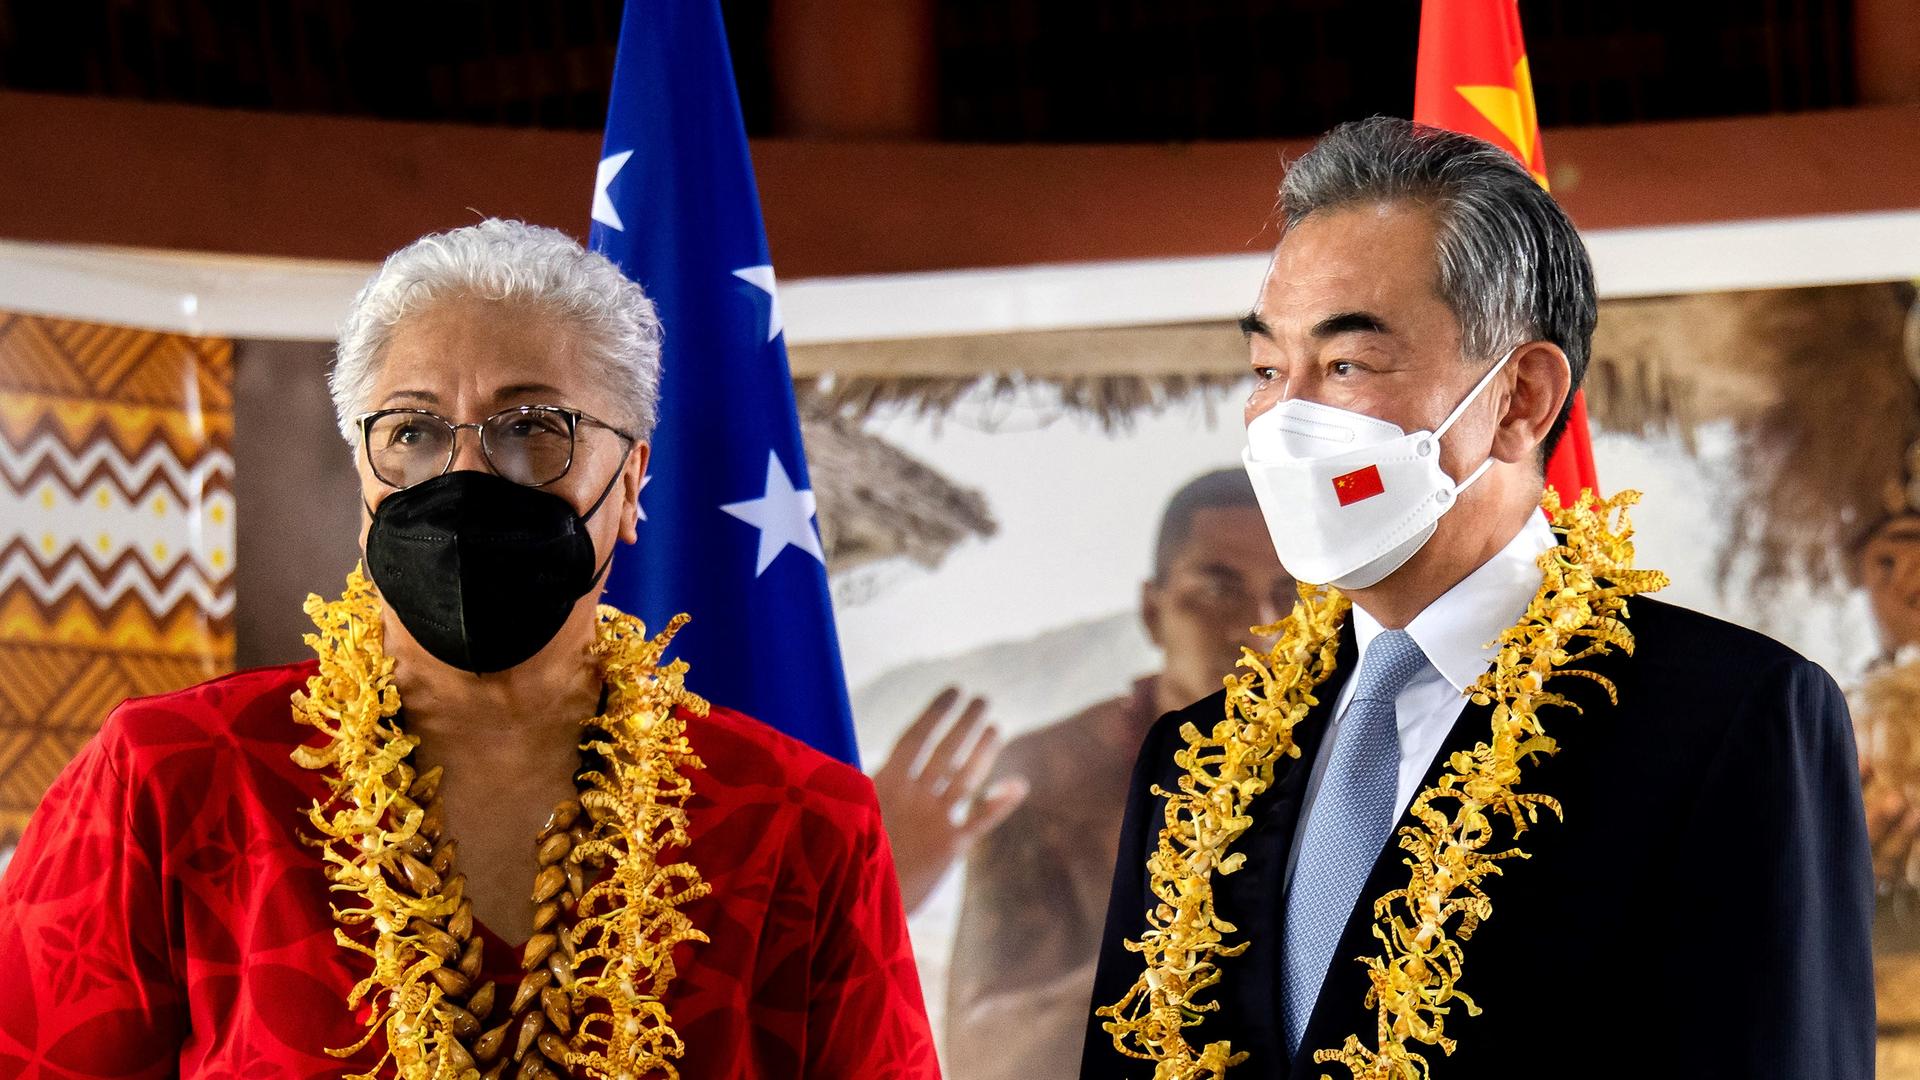 Internationale Politik - China baut Verbindungen in den Südpazifik aus - Abkommen mit Samoa geschlossen